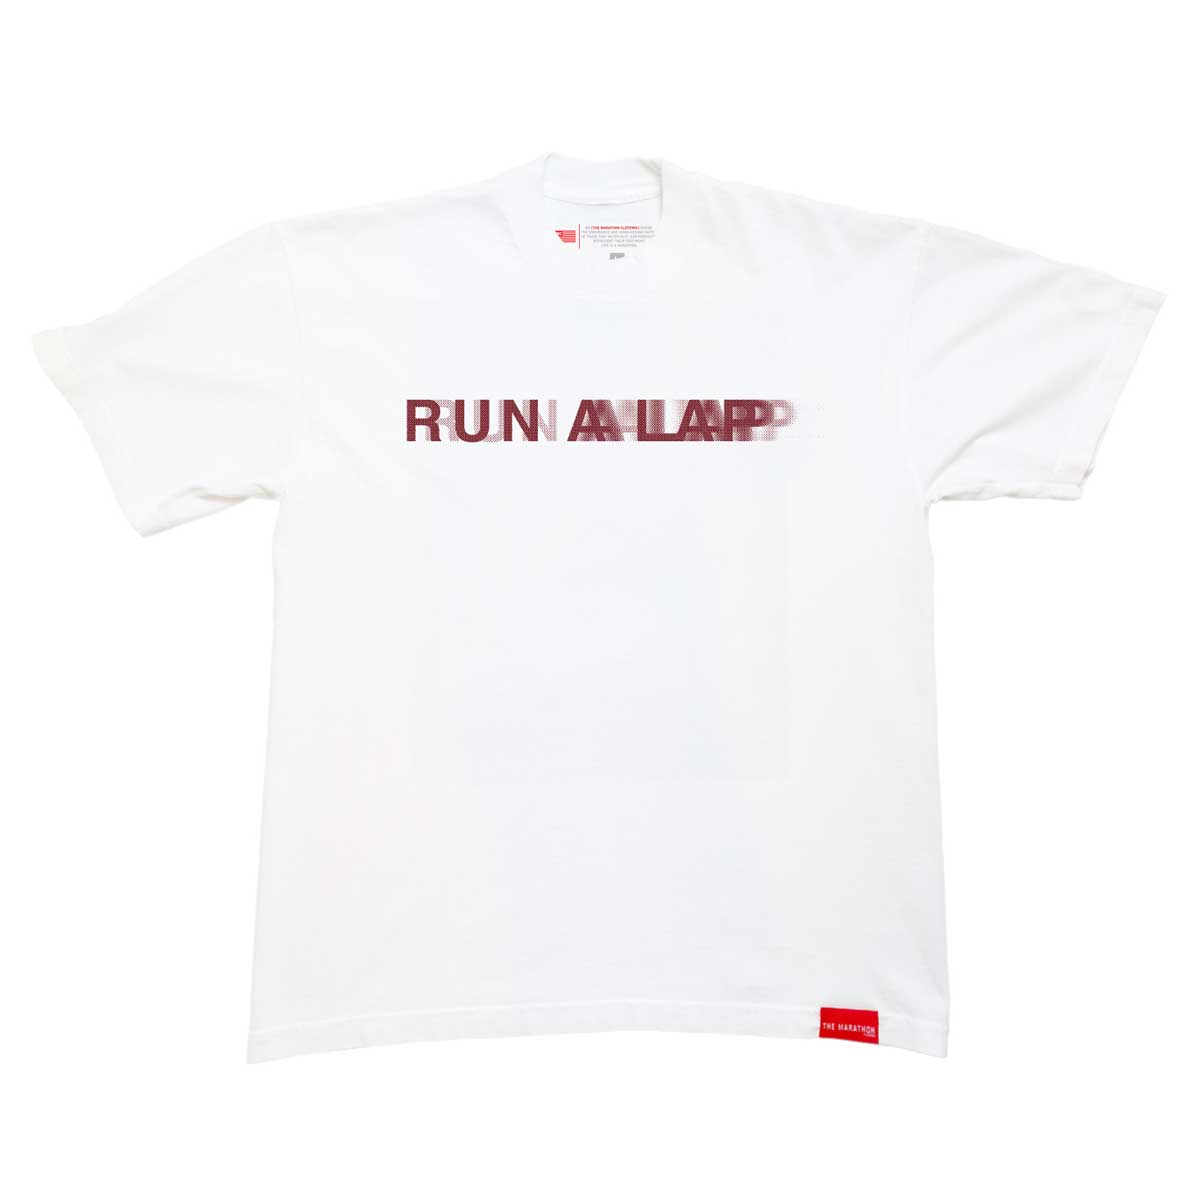 Run A Lap Blurred T-shirt - White/Maroon